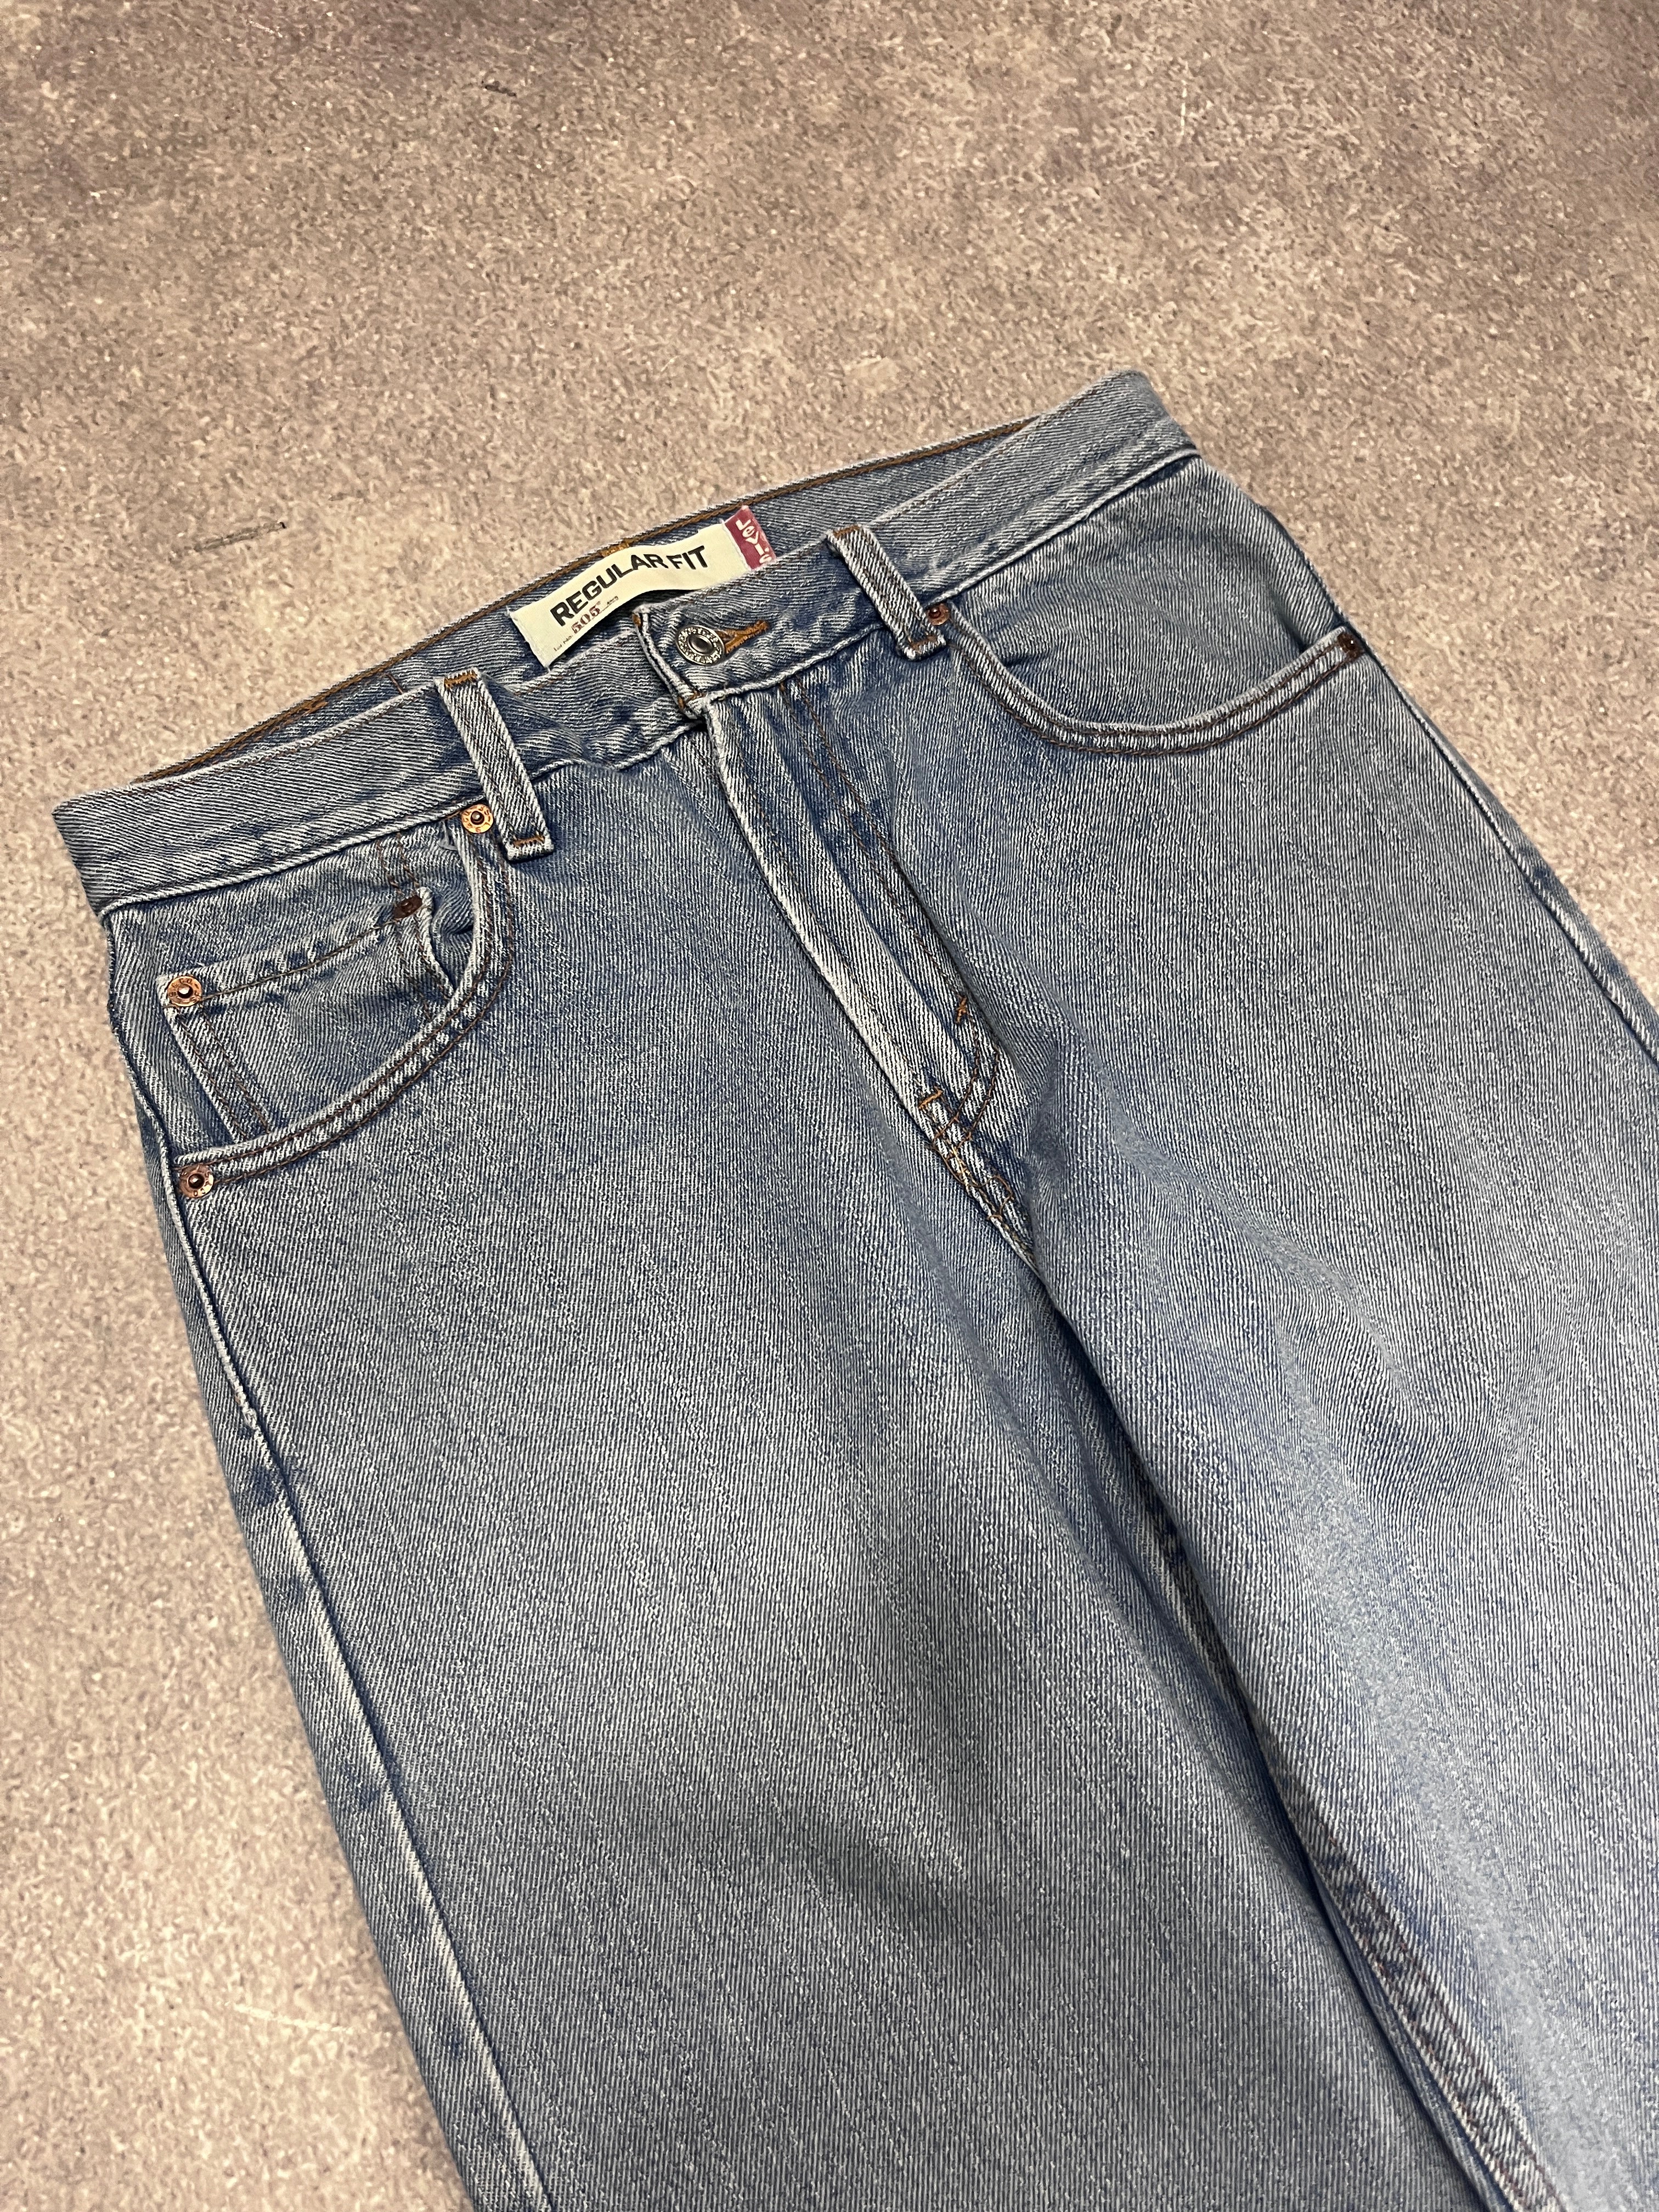 Vintage Levi 505 Denim Jeans Blue // W23 L32 - RHAGHOUSE VINTAGE